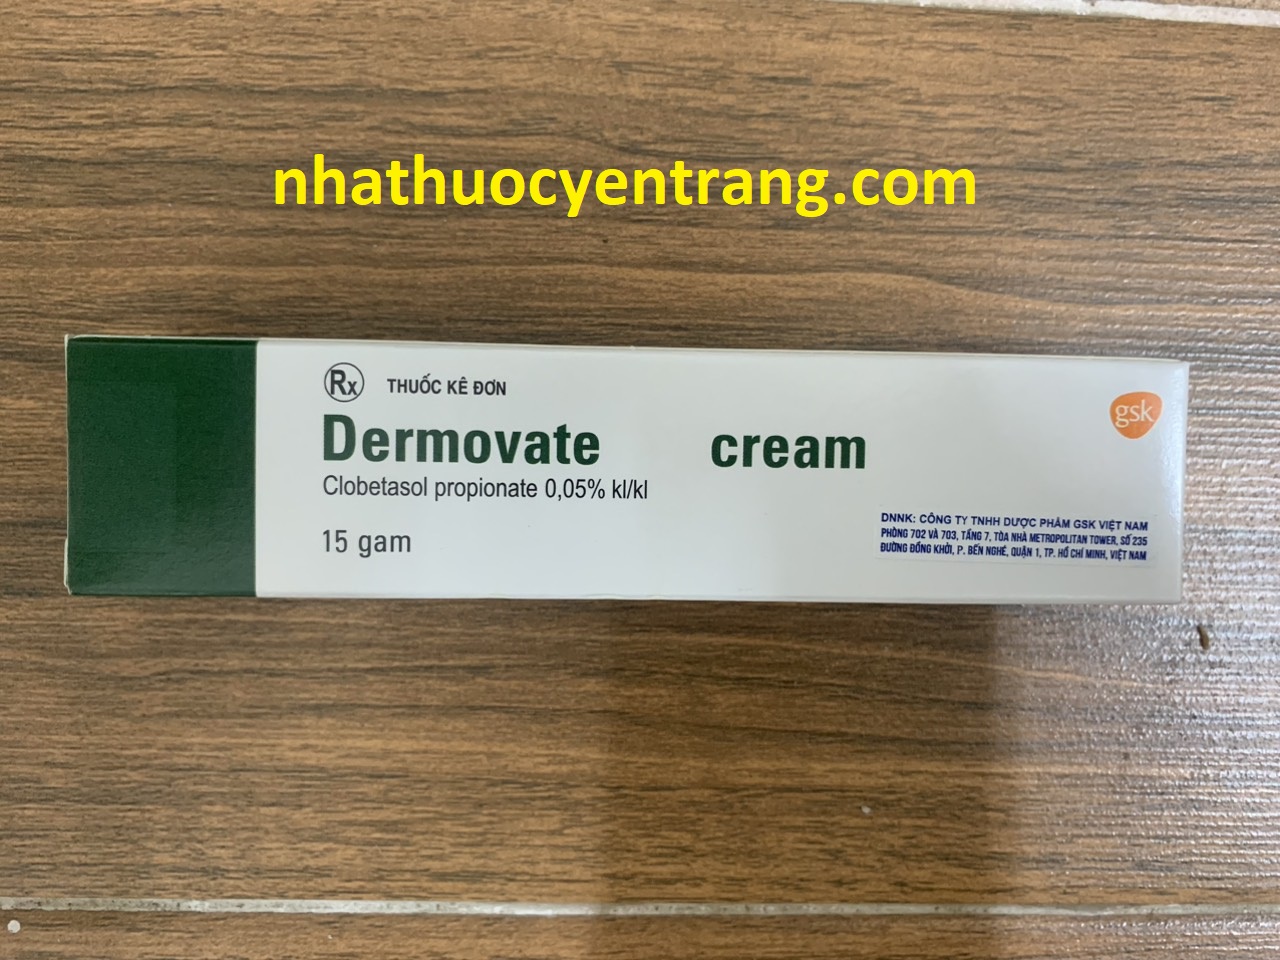 Dermovate cream